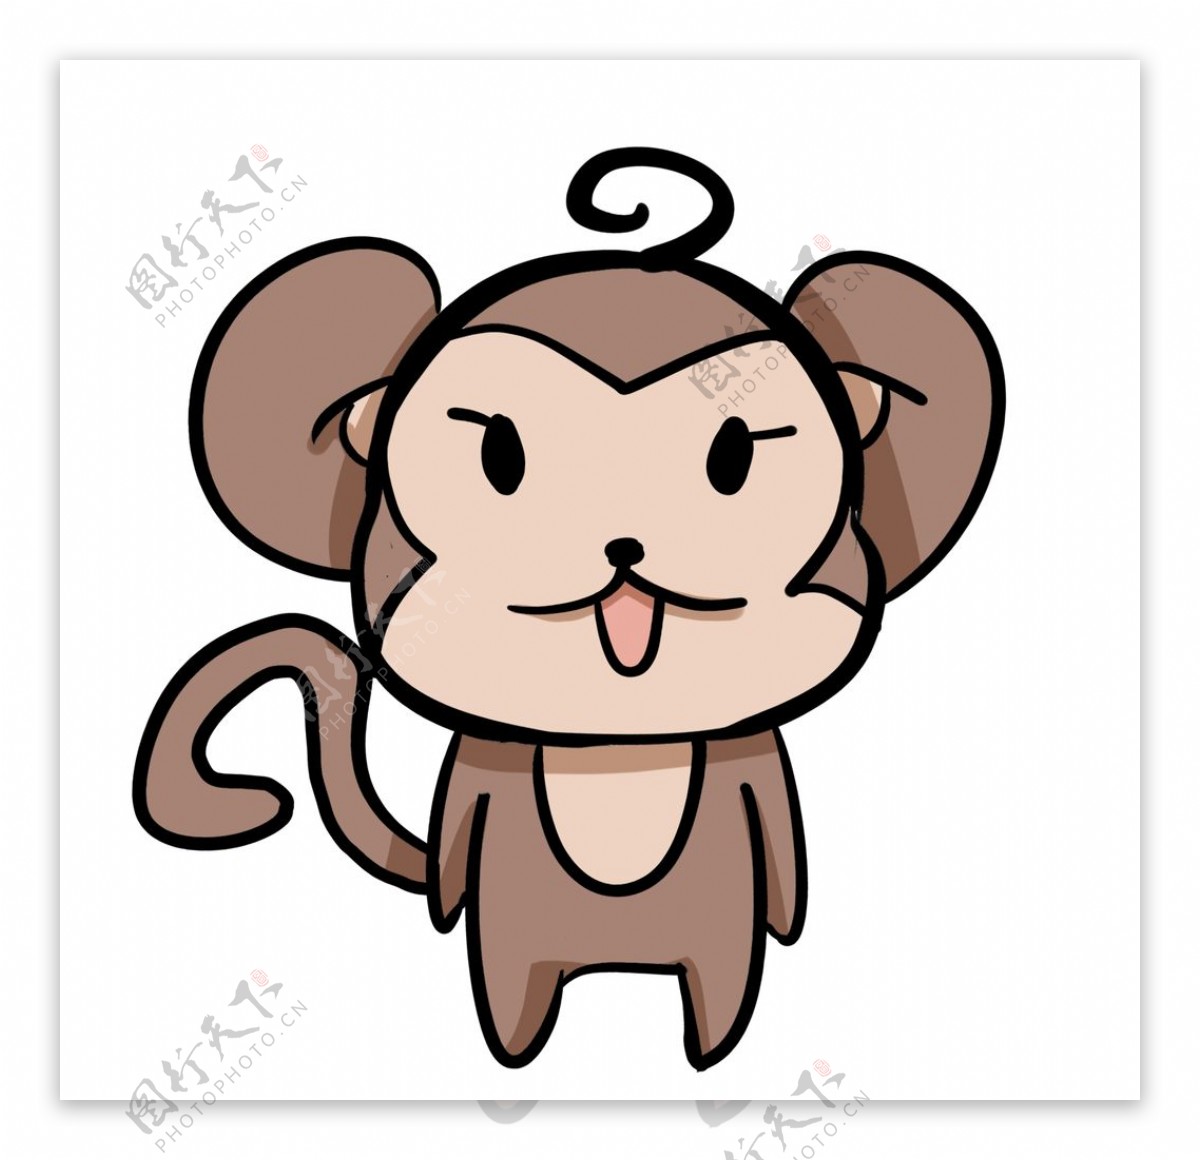 猴子可爱卡通动漫图片,可爱的猴子卡通图片,卡通小猴子图片大全,卡通猴子图片,可爱卡通猴子图片,卡通小猴子图片-可爱卡通小猴子图片_一号论文网